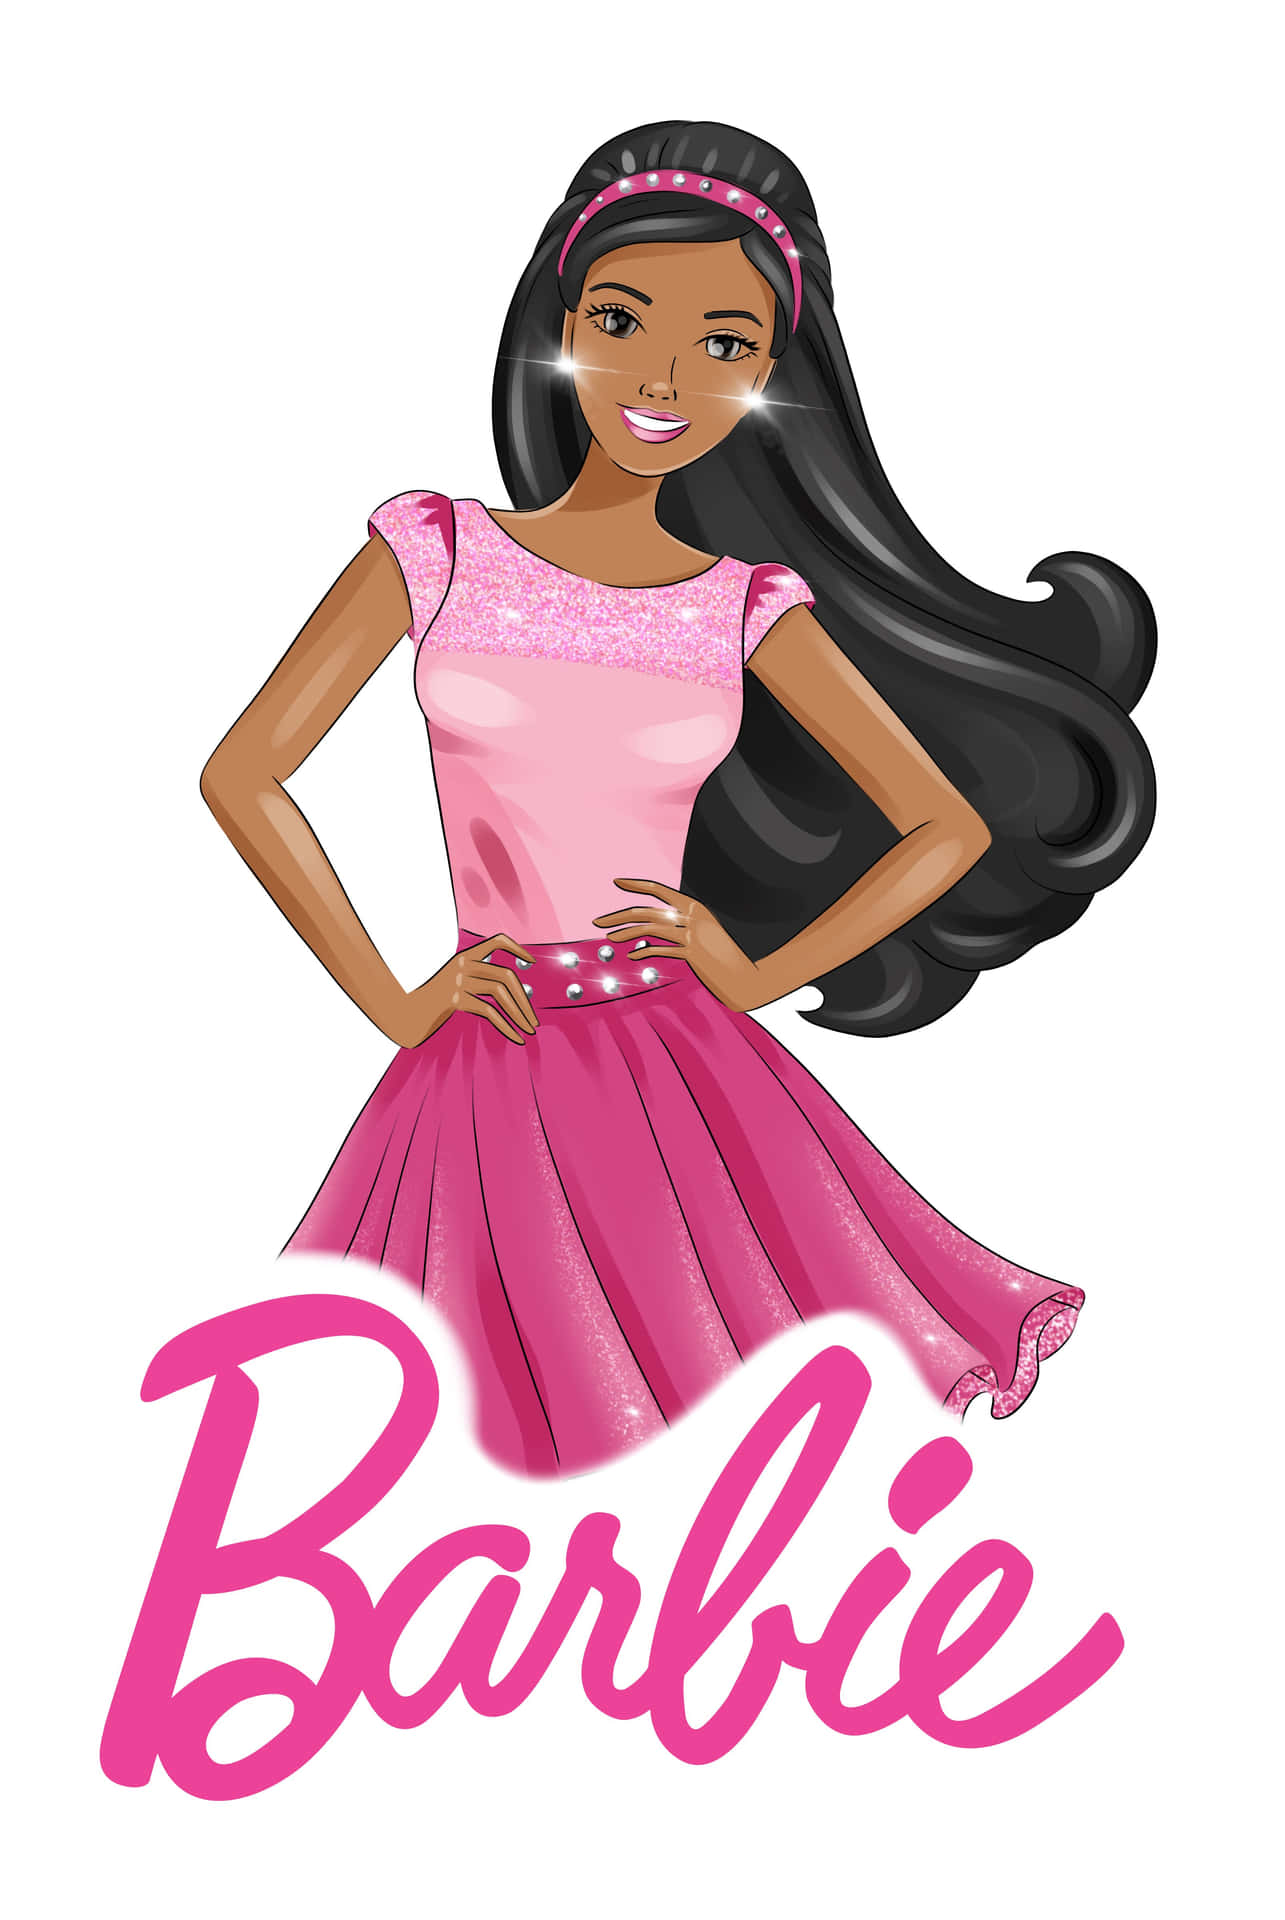 Black Barbiein Pink Dress Wallpaper